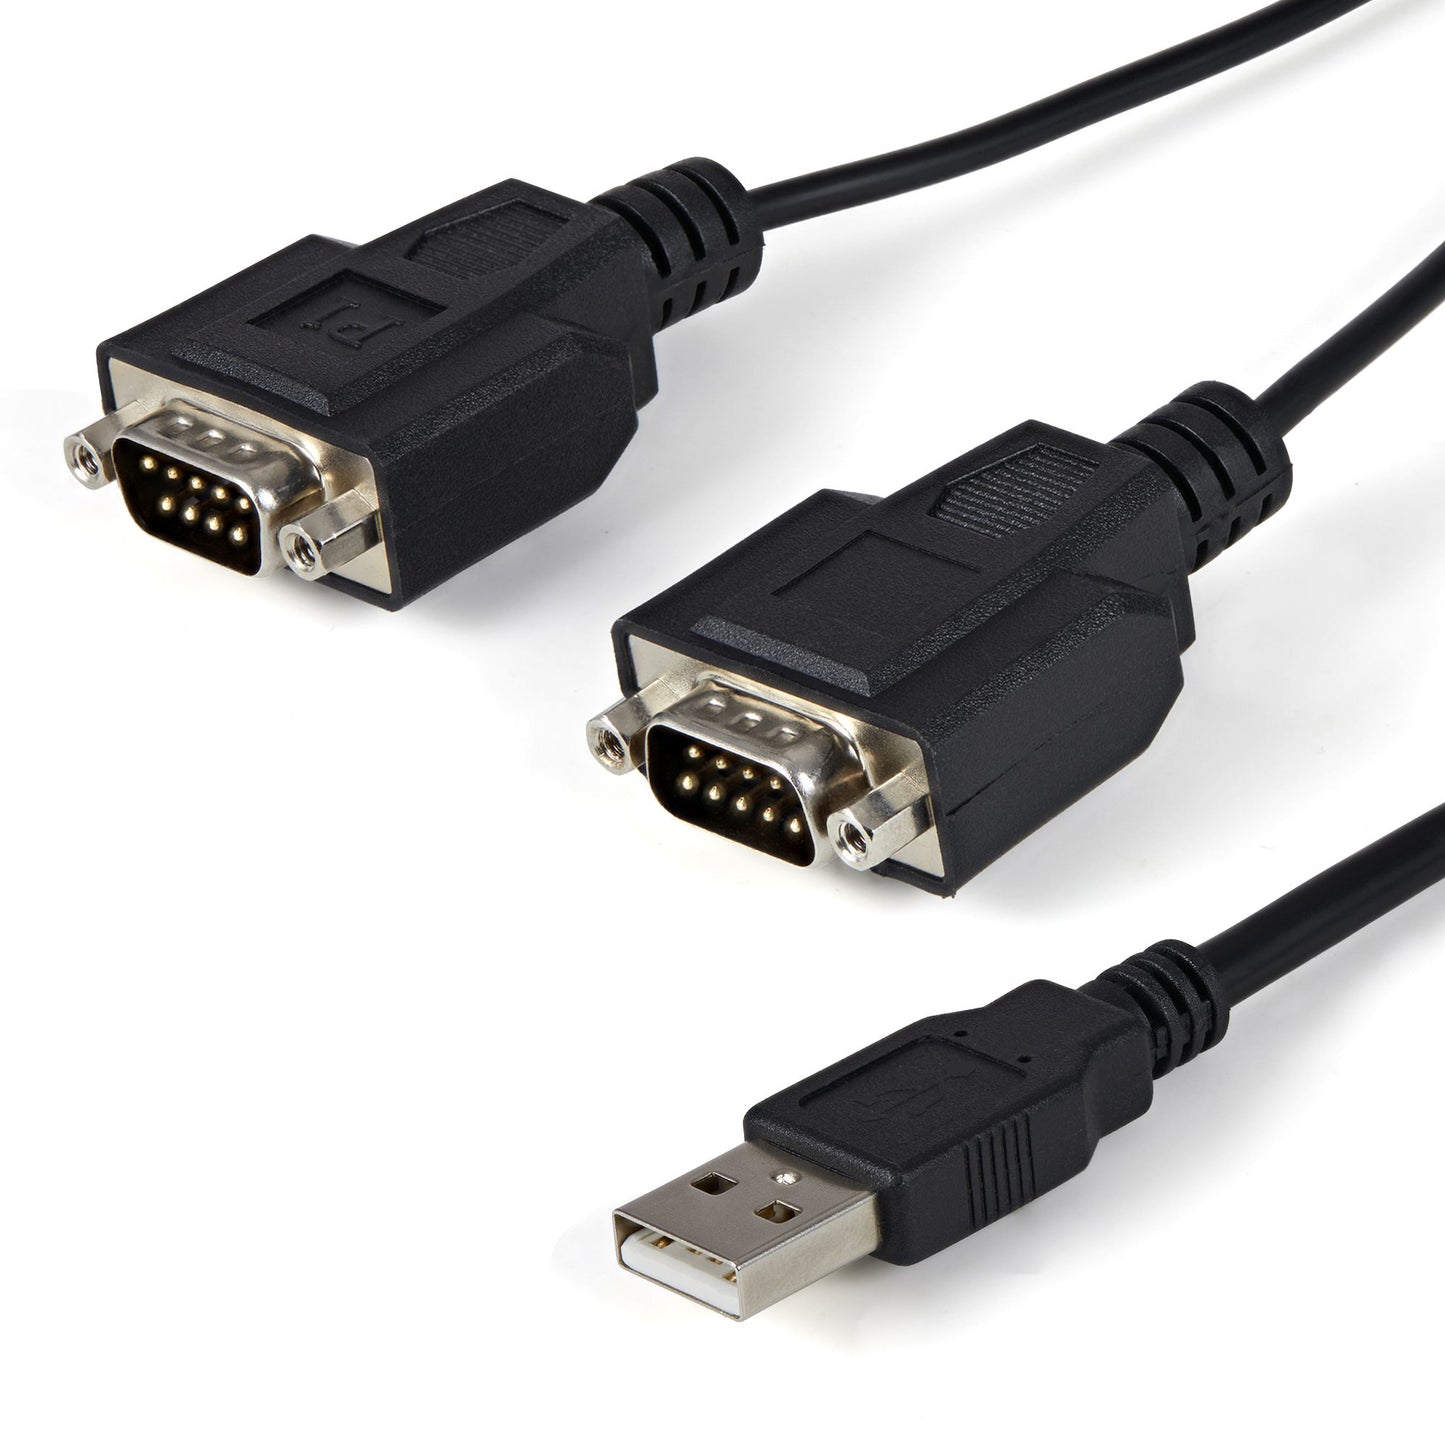 STARTECH CONSIG CABLE 1.8M ADAPTADOR USB A 2 CABL PUERTOS SERIAL CON RETENCION COM.